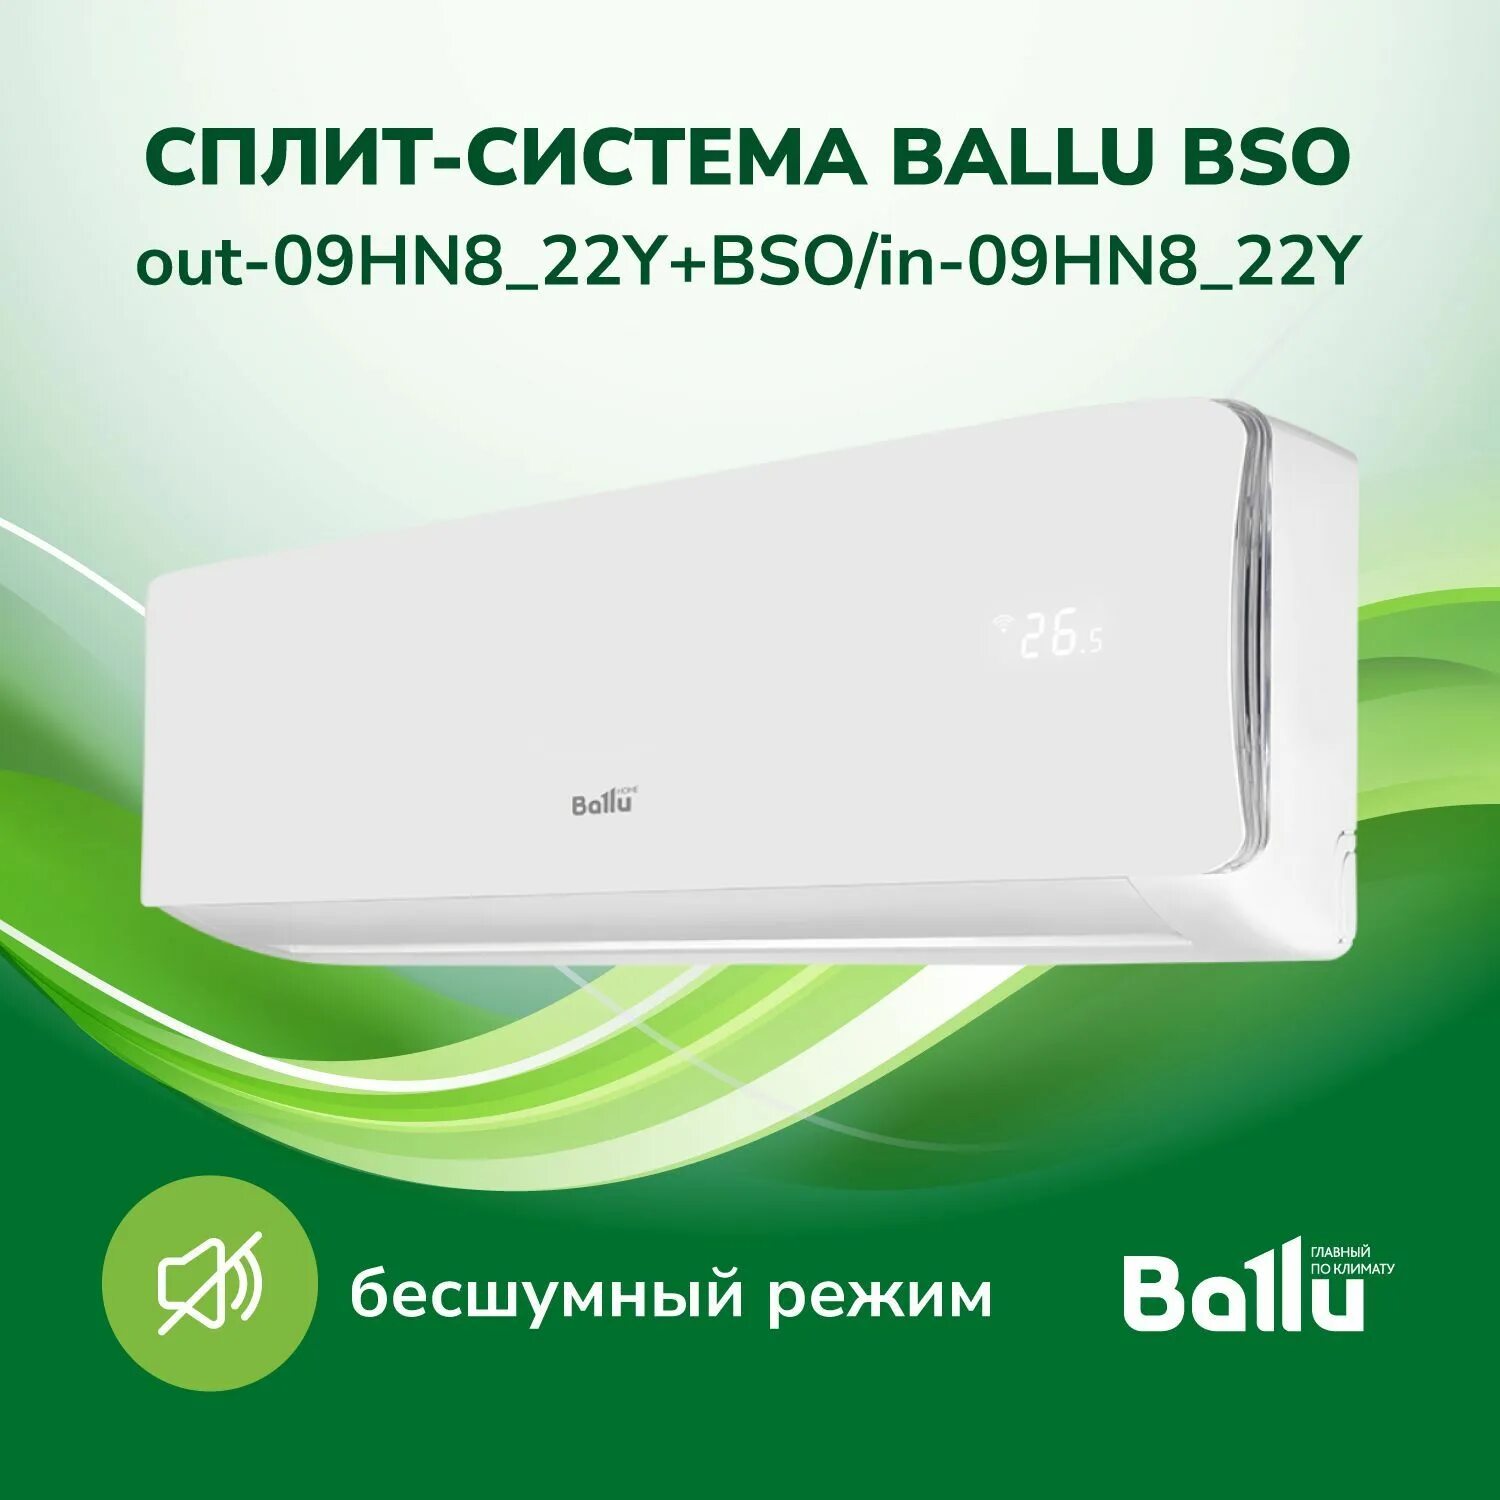 Сплит-система Ballu BSW-07hn1_23y. Сплит-система Ballu Olympio Legend BSW-09hn1_23y комплект. Кондиционер балу BSO/in-09hn8_22y. Ballu Olympio Legend BSW-09hn1_23y.